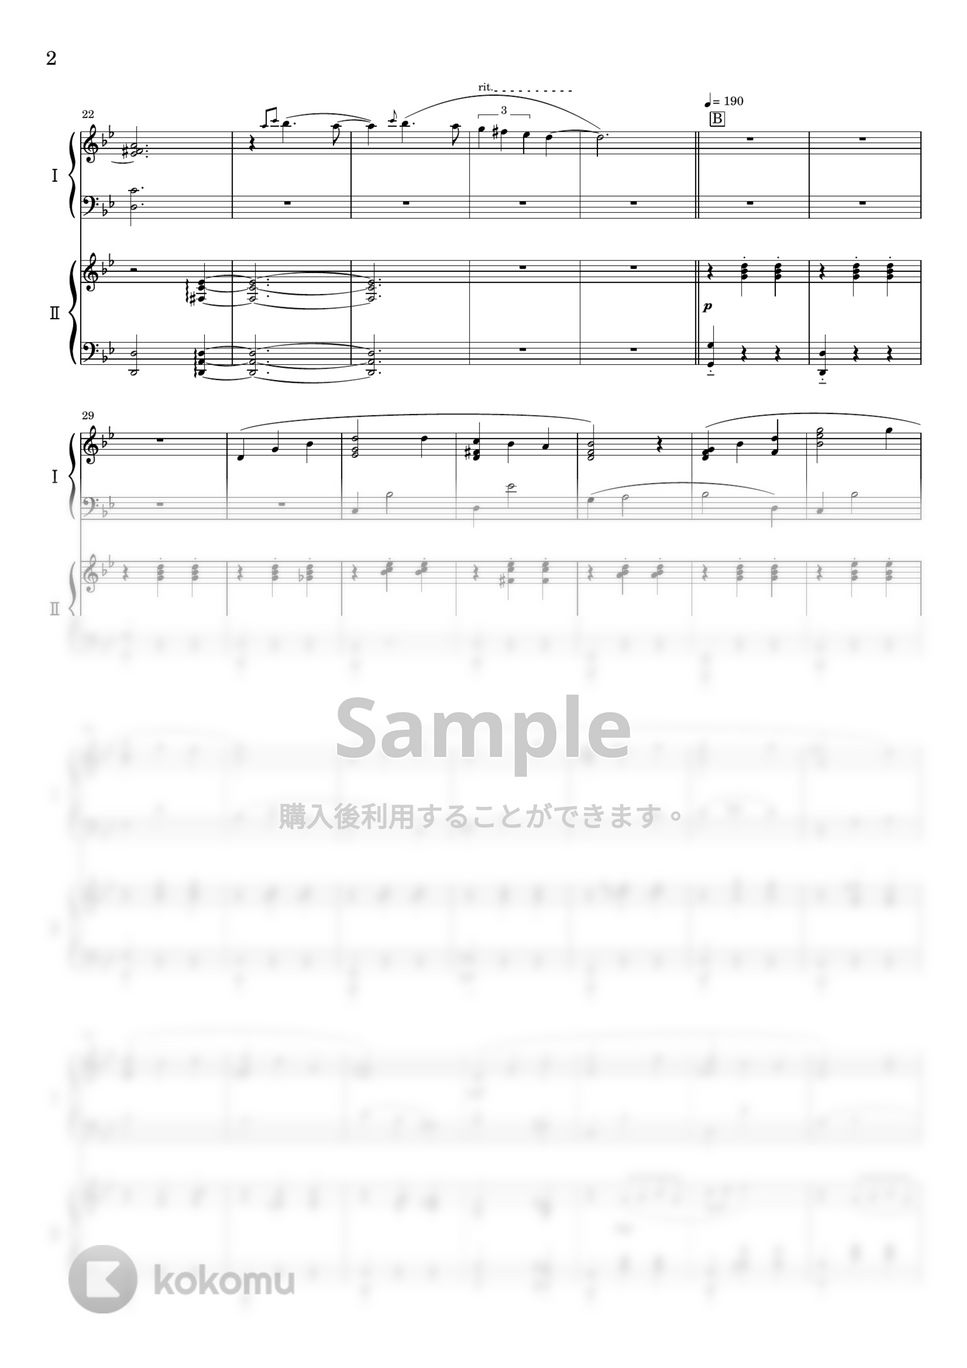 久石譲 - 人生のメリーゴーランド (2台ピアノ) by わたなべももこ